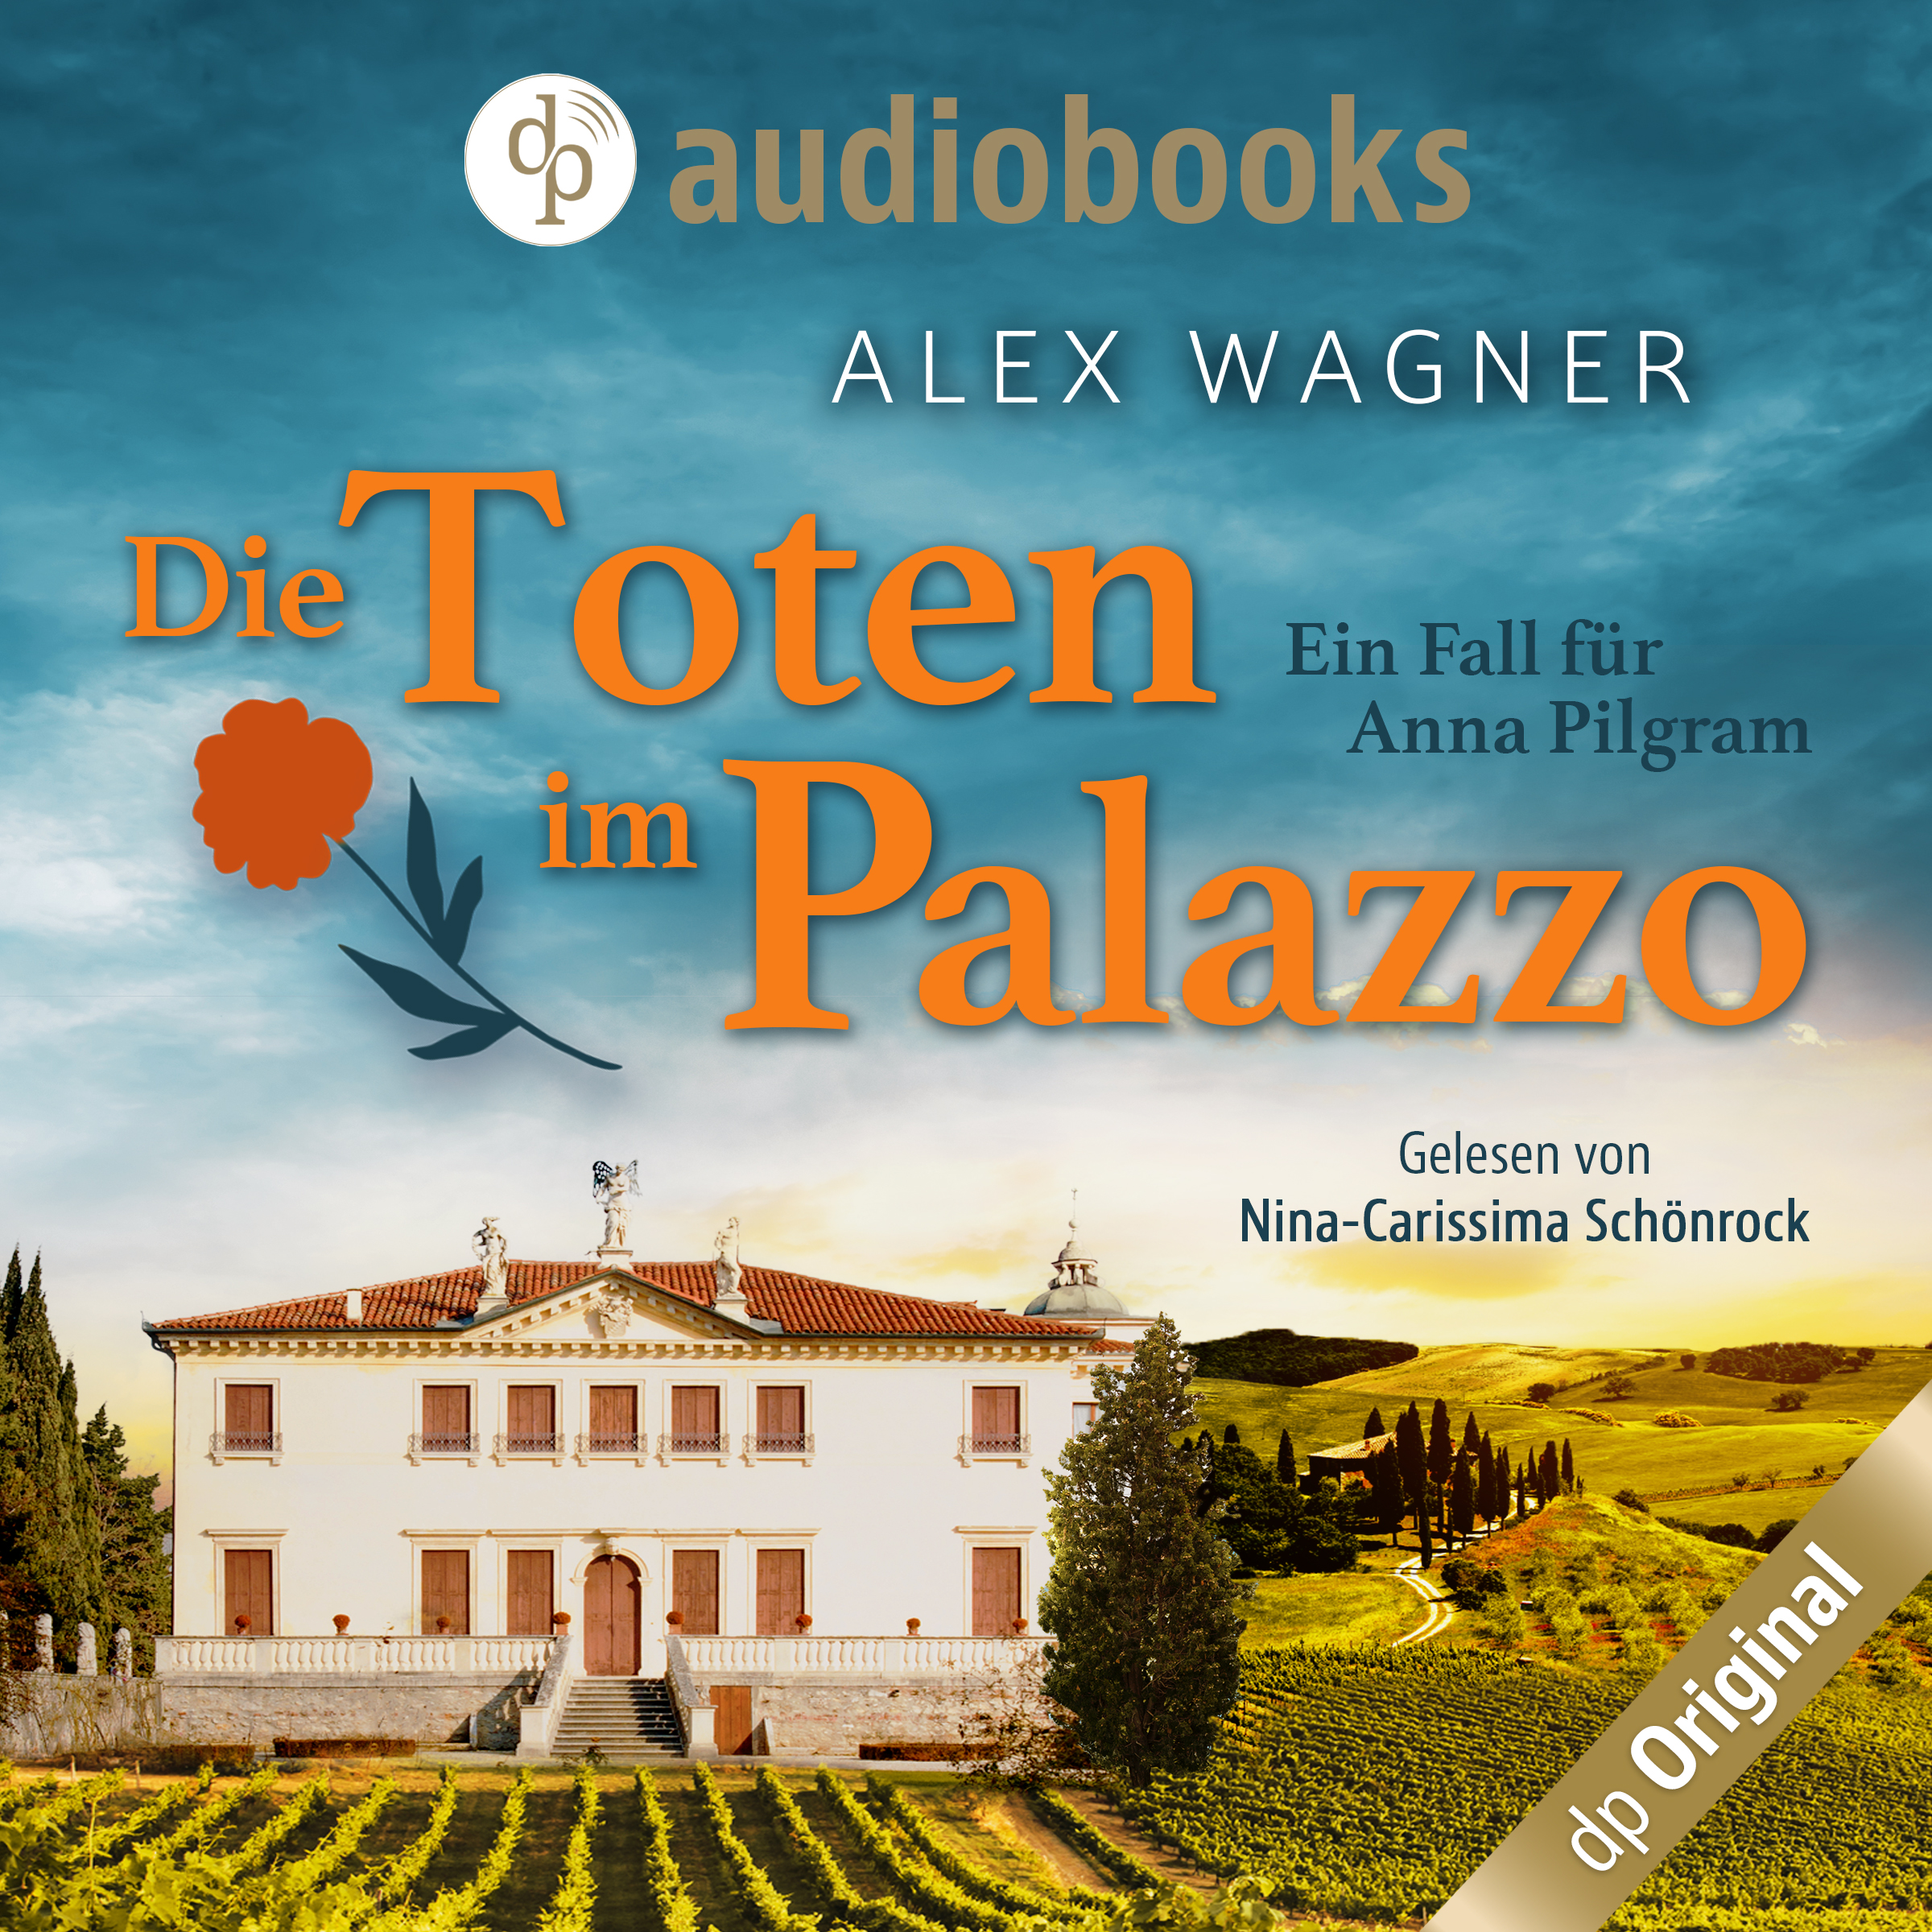 “Die Toten im Palazzo“ 
Reihe: Ein Fall für Anna Pilgram
Autorin: Alex Wagner
Verlag: dp Digital Publishers
VÖ: 06/2023